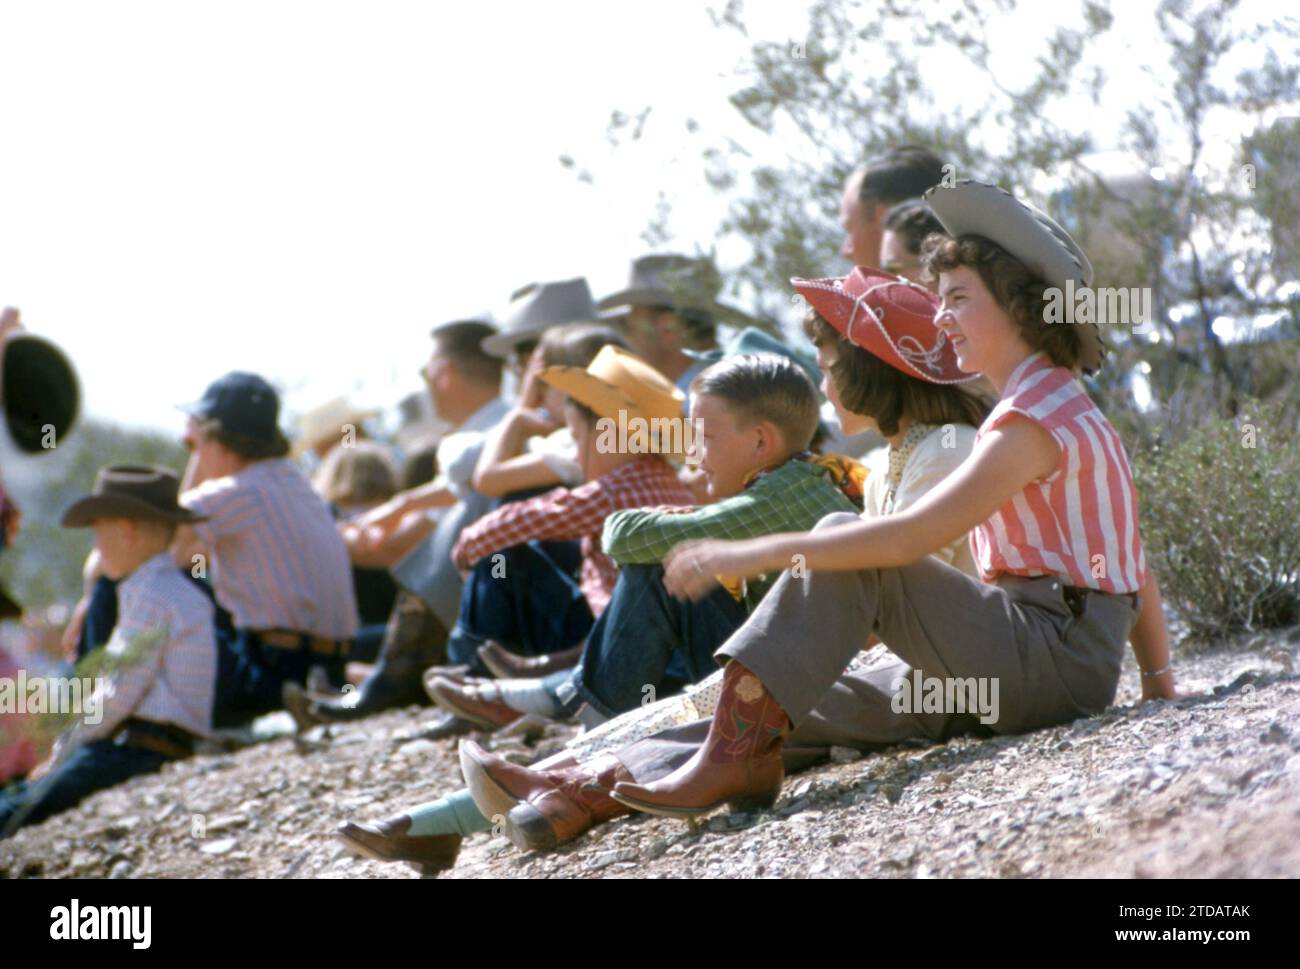 PHOENIX, Arizona - 15 MARZO: I tifosi guardano il vice sceriffo della contea di Maricopa giocare a Pushball con un enorme pallone d'argento nell'arena dell'Arizona Biltmore Hotel il 15 marzo 1955 a Phoenix, Arizona. (Foto di Hy Peskin) Foto Stock